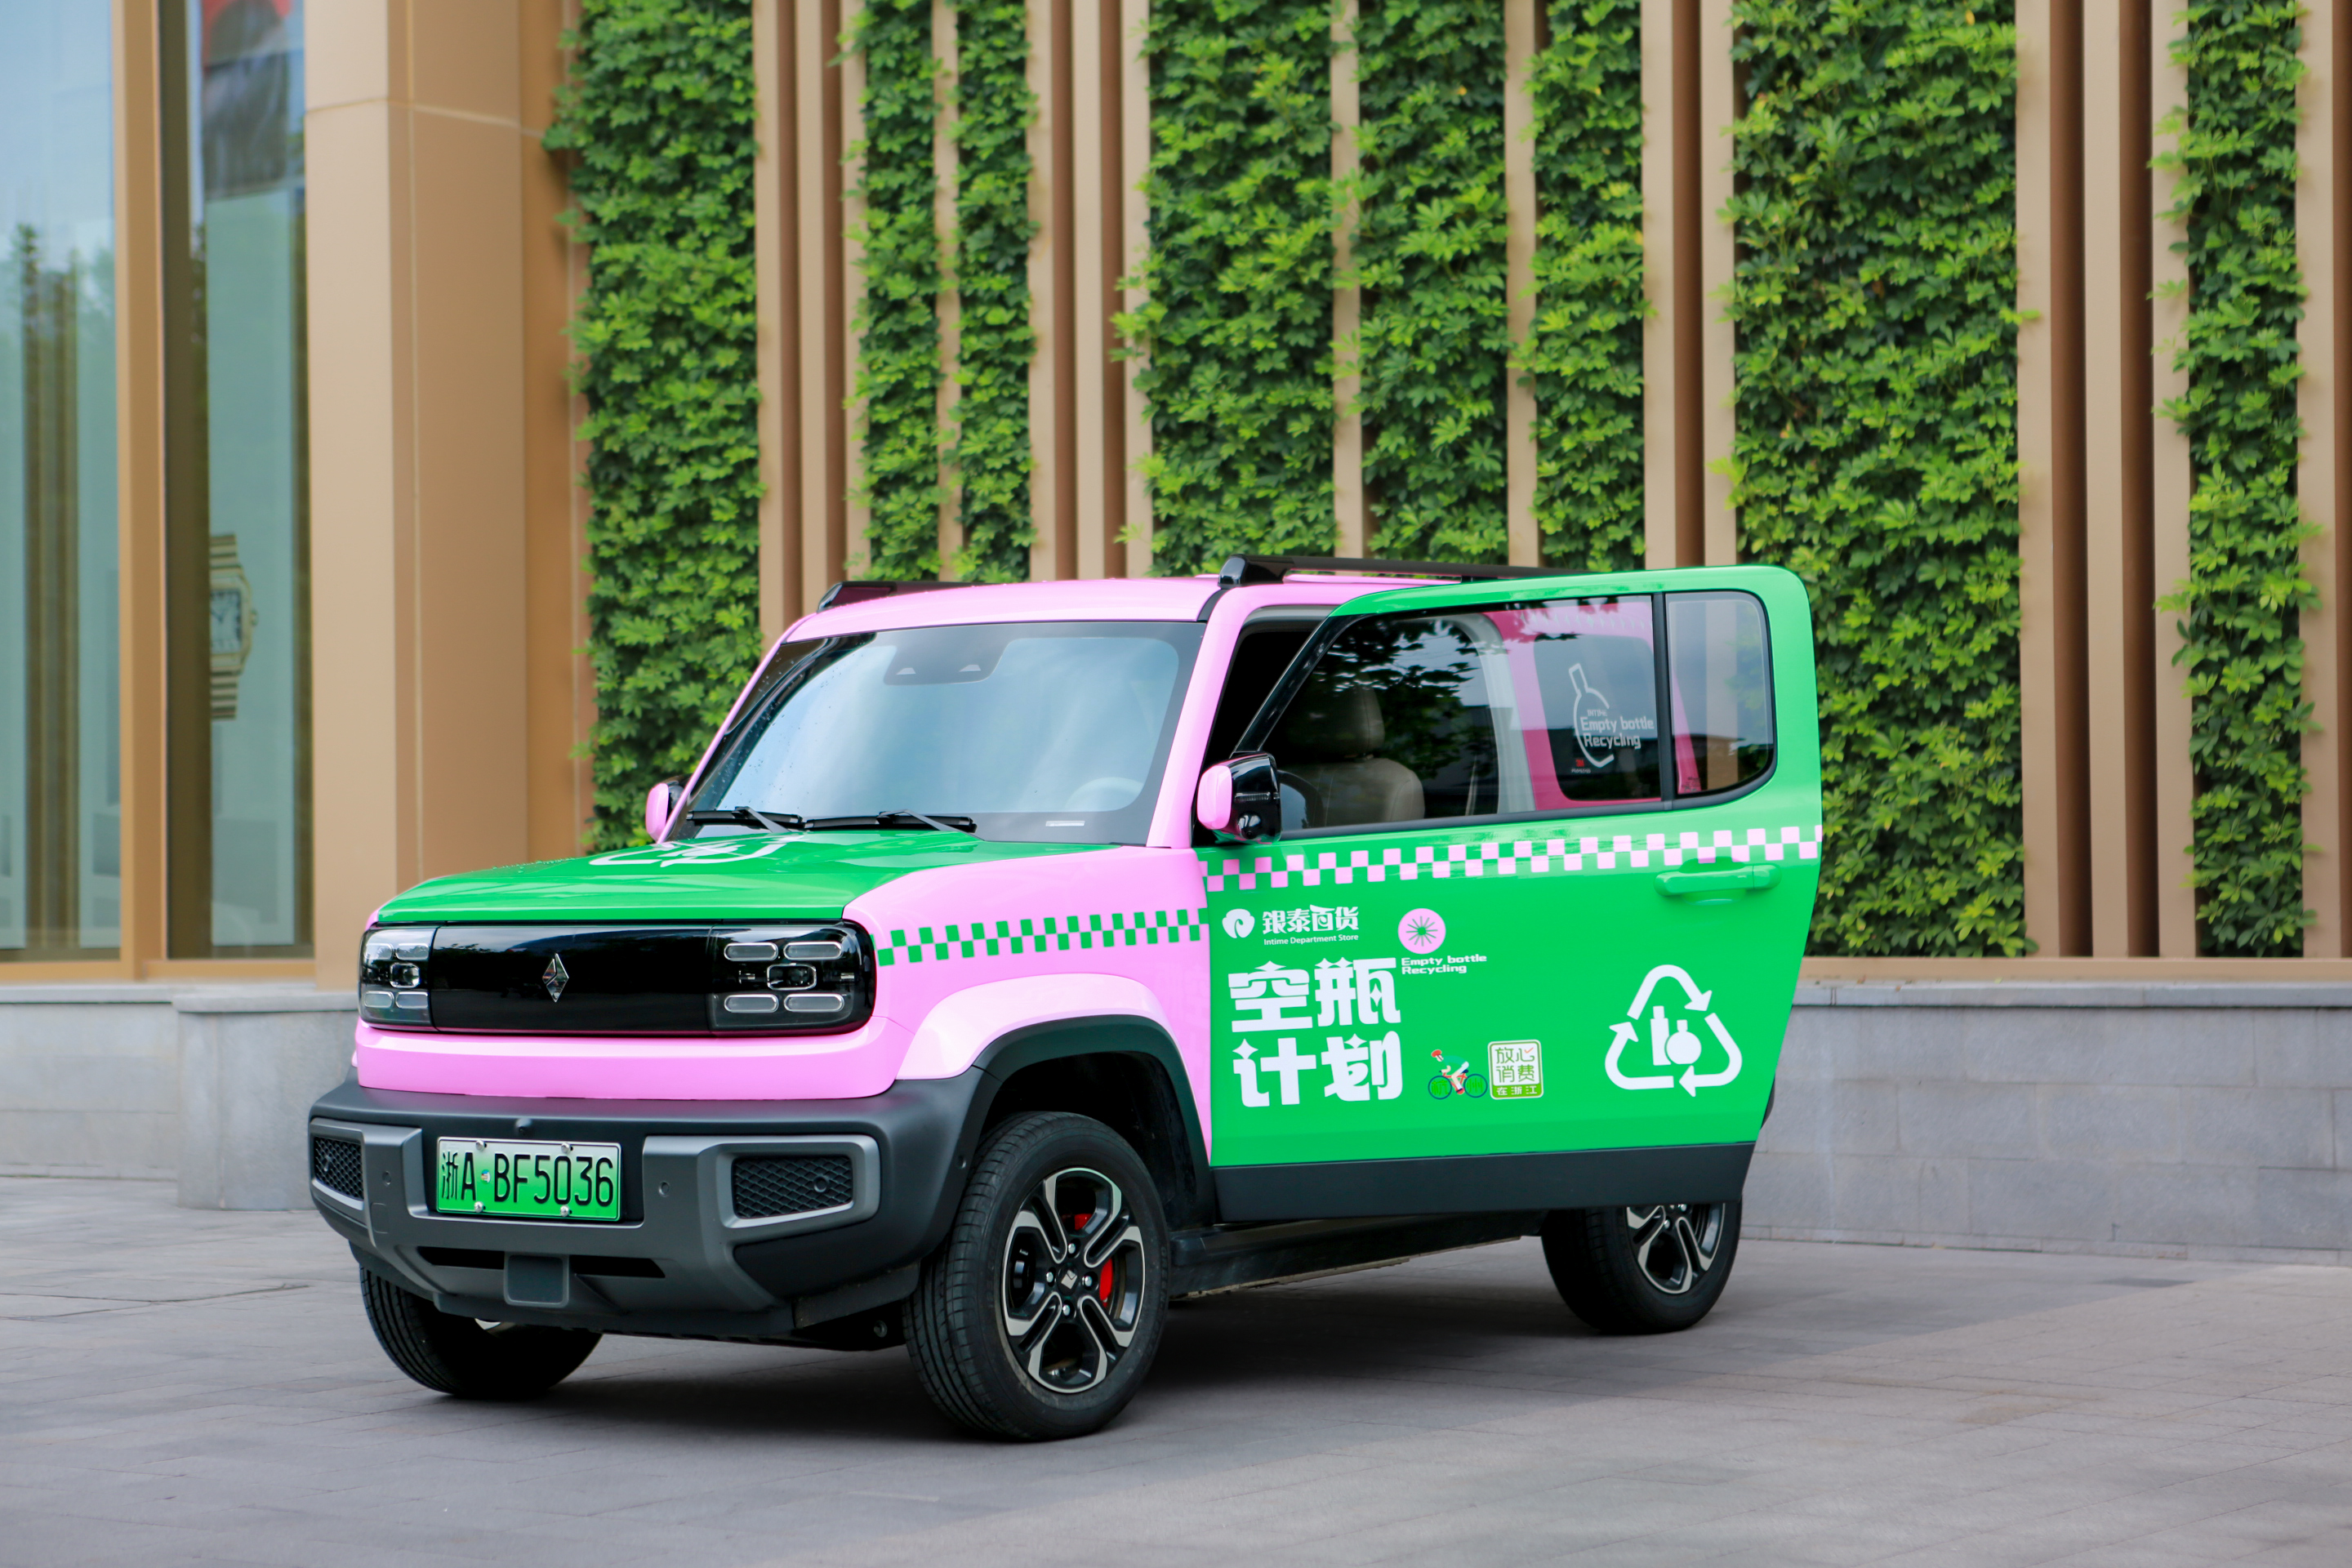 美妆空瓶回收车进社区 银泰百货推出倡导绿色公益新方式-全球消息